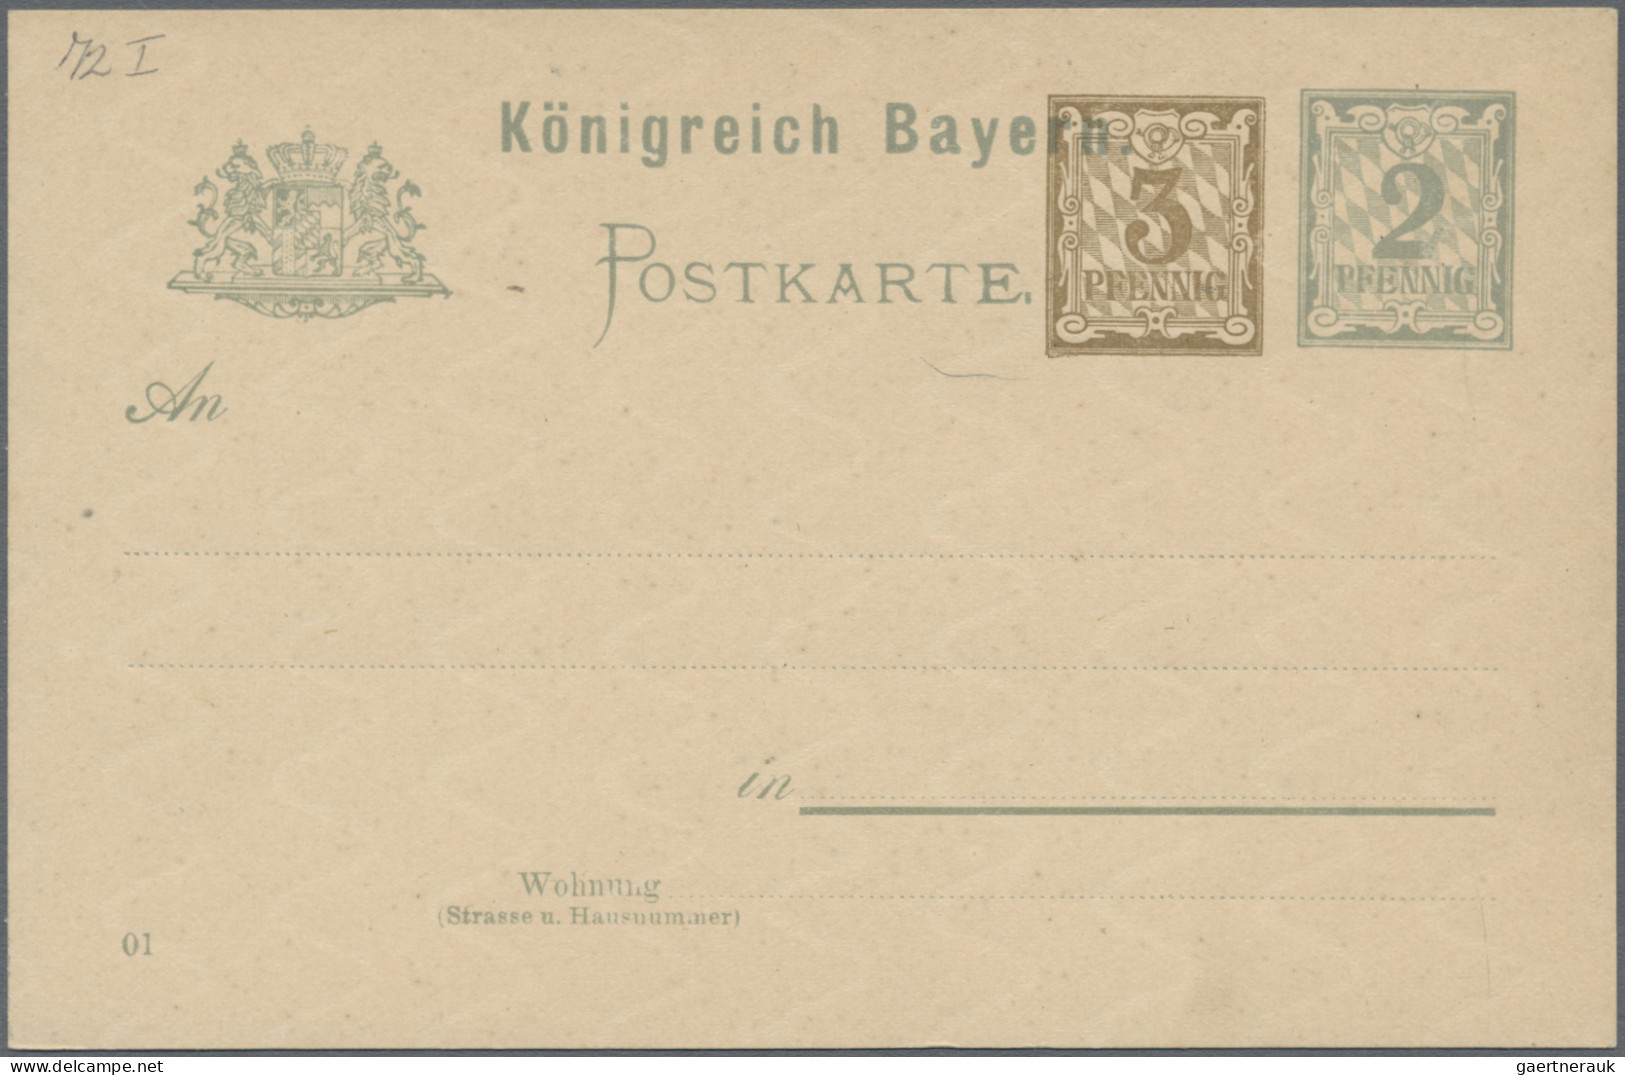 Bayern - Marken und Briefe: 1856/1916, saubere Partie von 15 ausgesuchten Belege